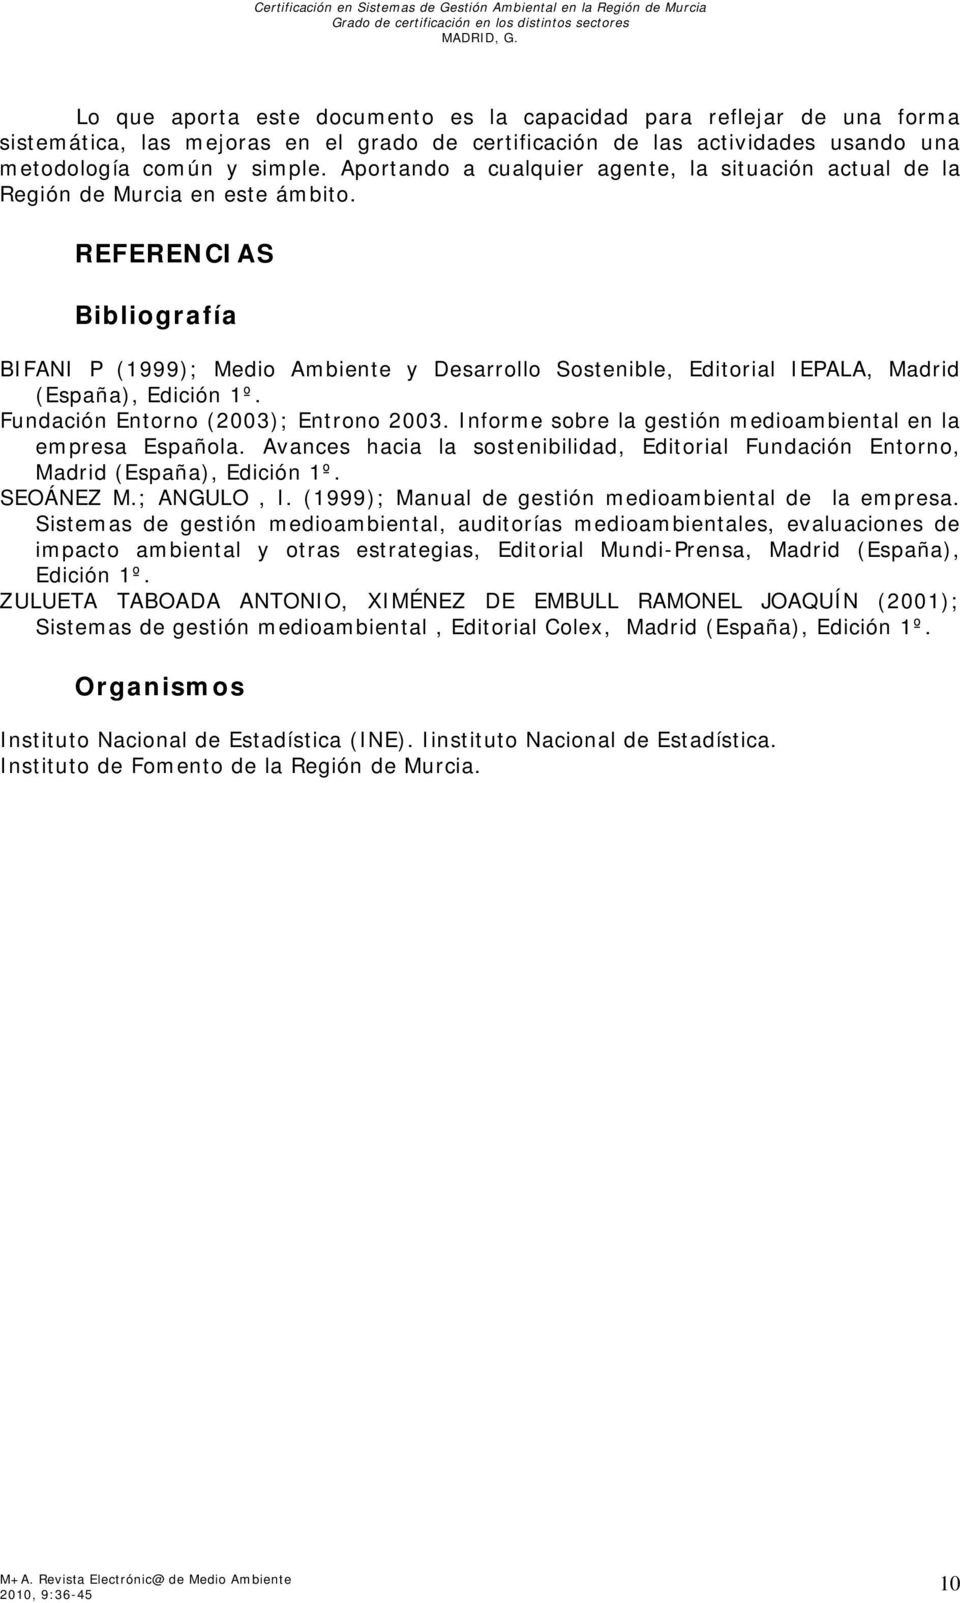 REFERENCIAS Bibliografía BIFANI P (1999); Medio Ambiente y Desarrollo Sostenible, Editorial IEPALA, Madrid (España), Edición 1º. Fundación Entorno (2003); Entrono 2003.